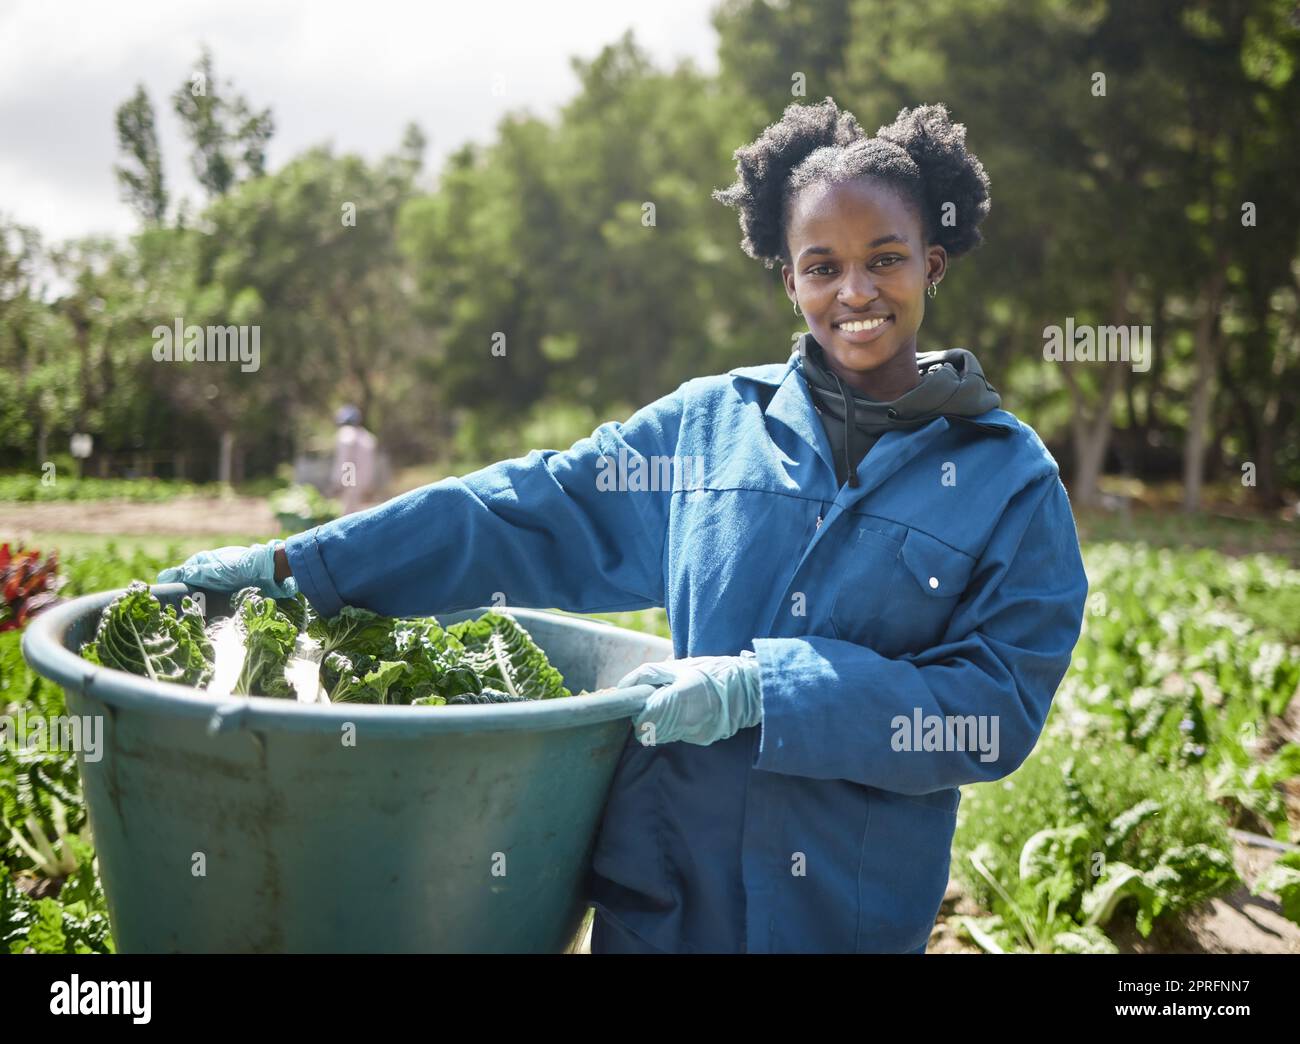 Landarbeiter, Landarbeiter und Nachhaltigkeitsarbeiter, die auf einem Feld an grünem Pflanzenwachstum arbeiten. Natürliche Umwelt und nachhaltiger Garten und Ökologie mit einer Frau, die auf dem Land arbeitet Stockfoto